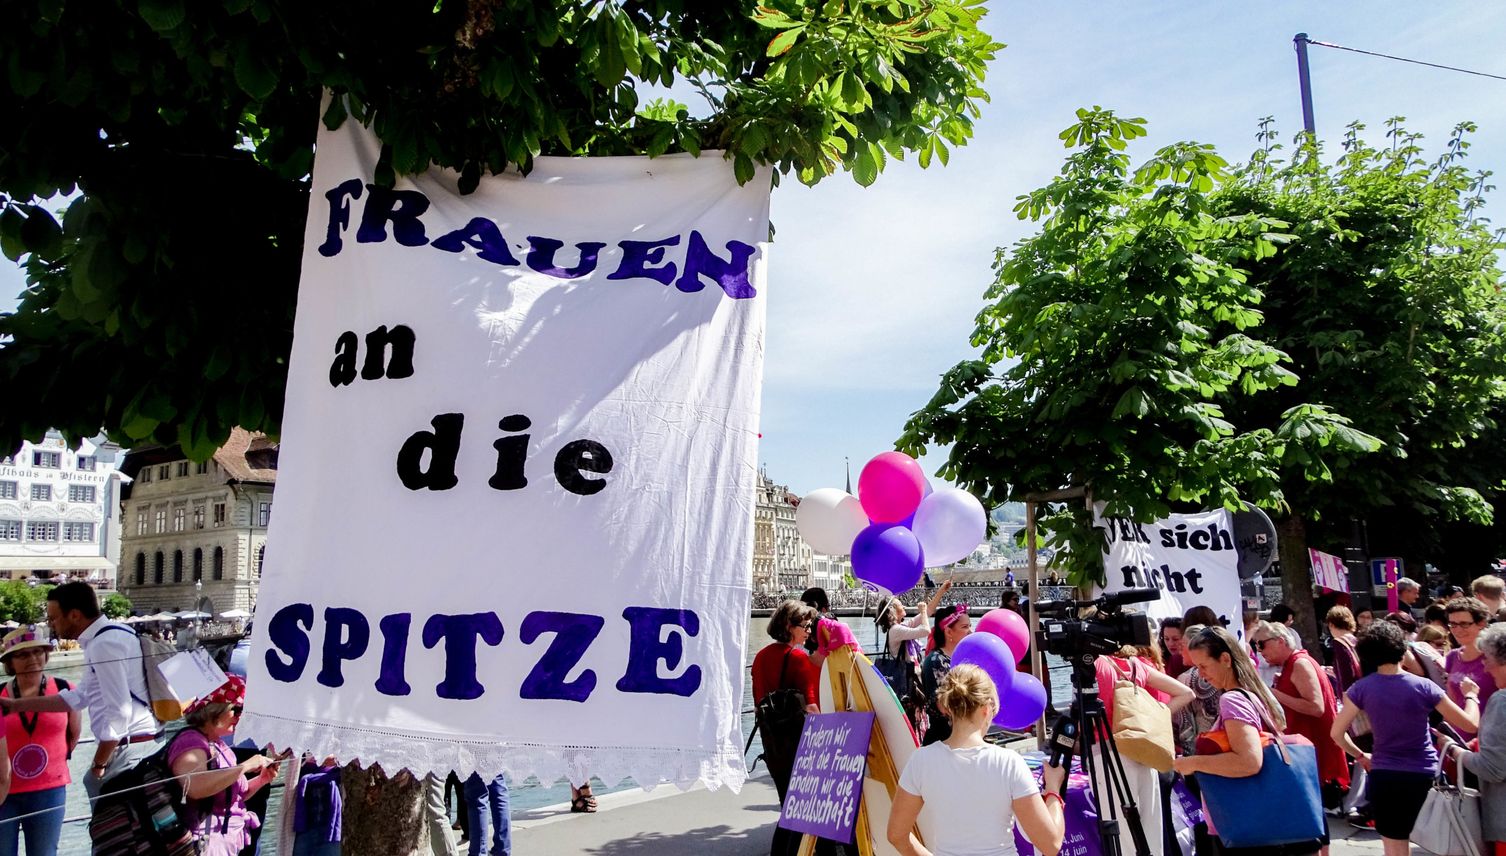 Luzerner Stadtrat beharrt auf Frauenquote für Kommission